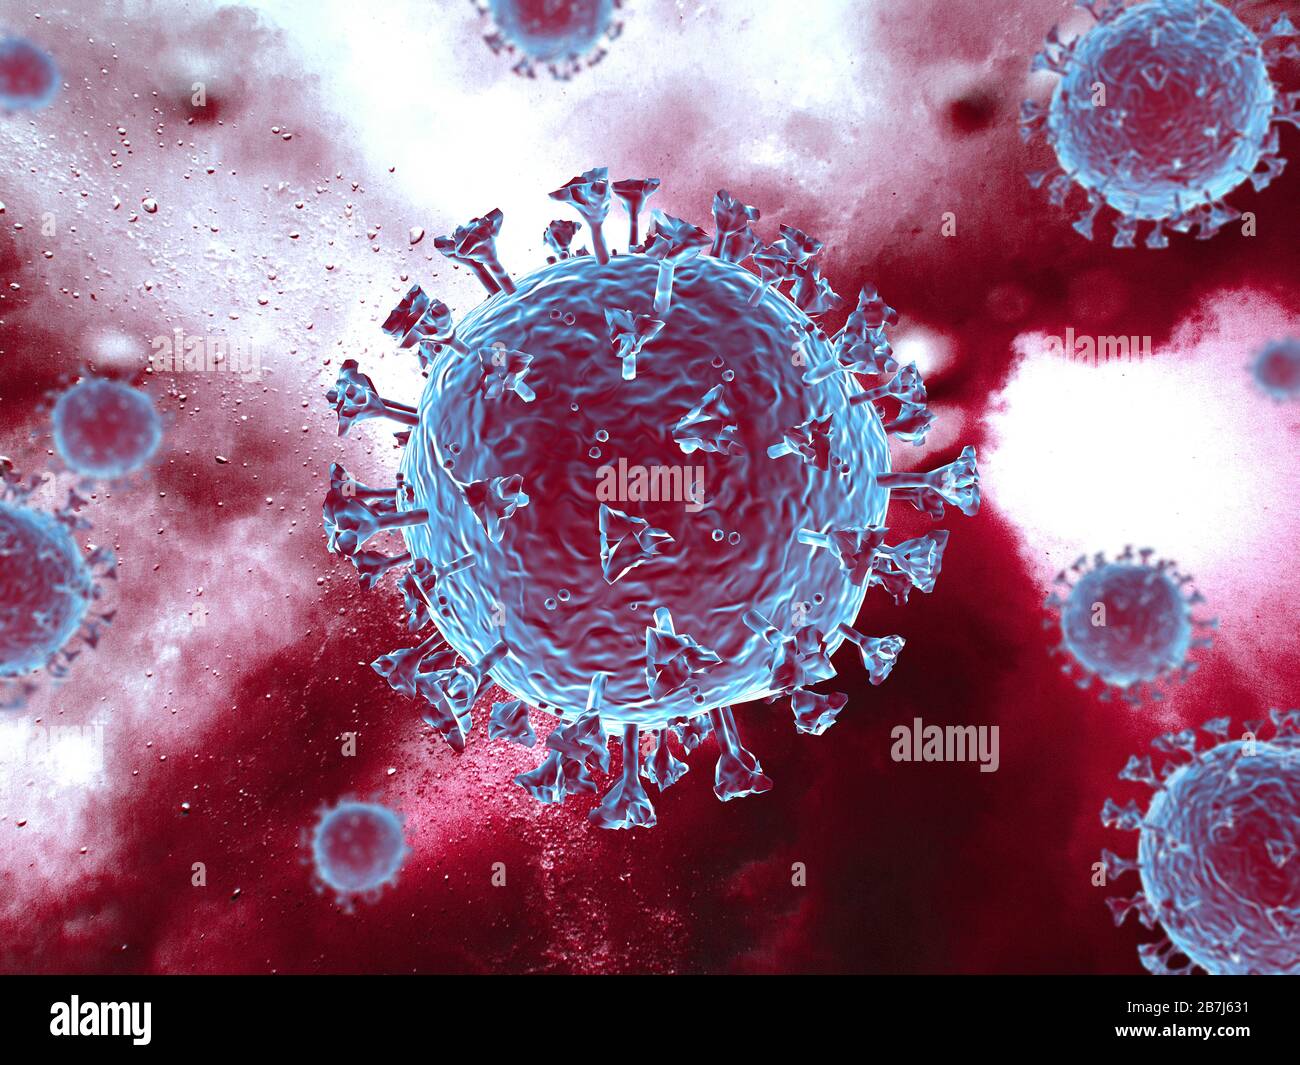 Scena del virus Corona con struttura dettagliata. Soggetti blu/rossi su sfondo rosso. rendering 3d. Foto Stock